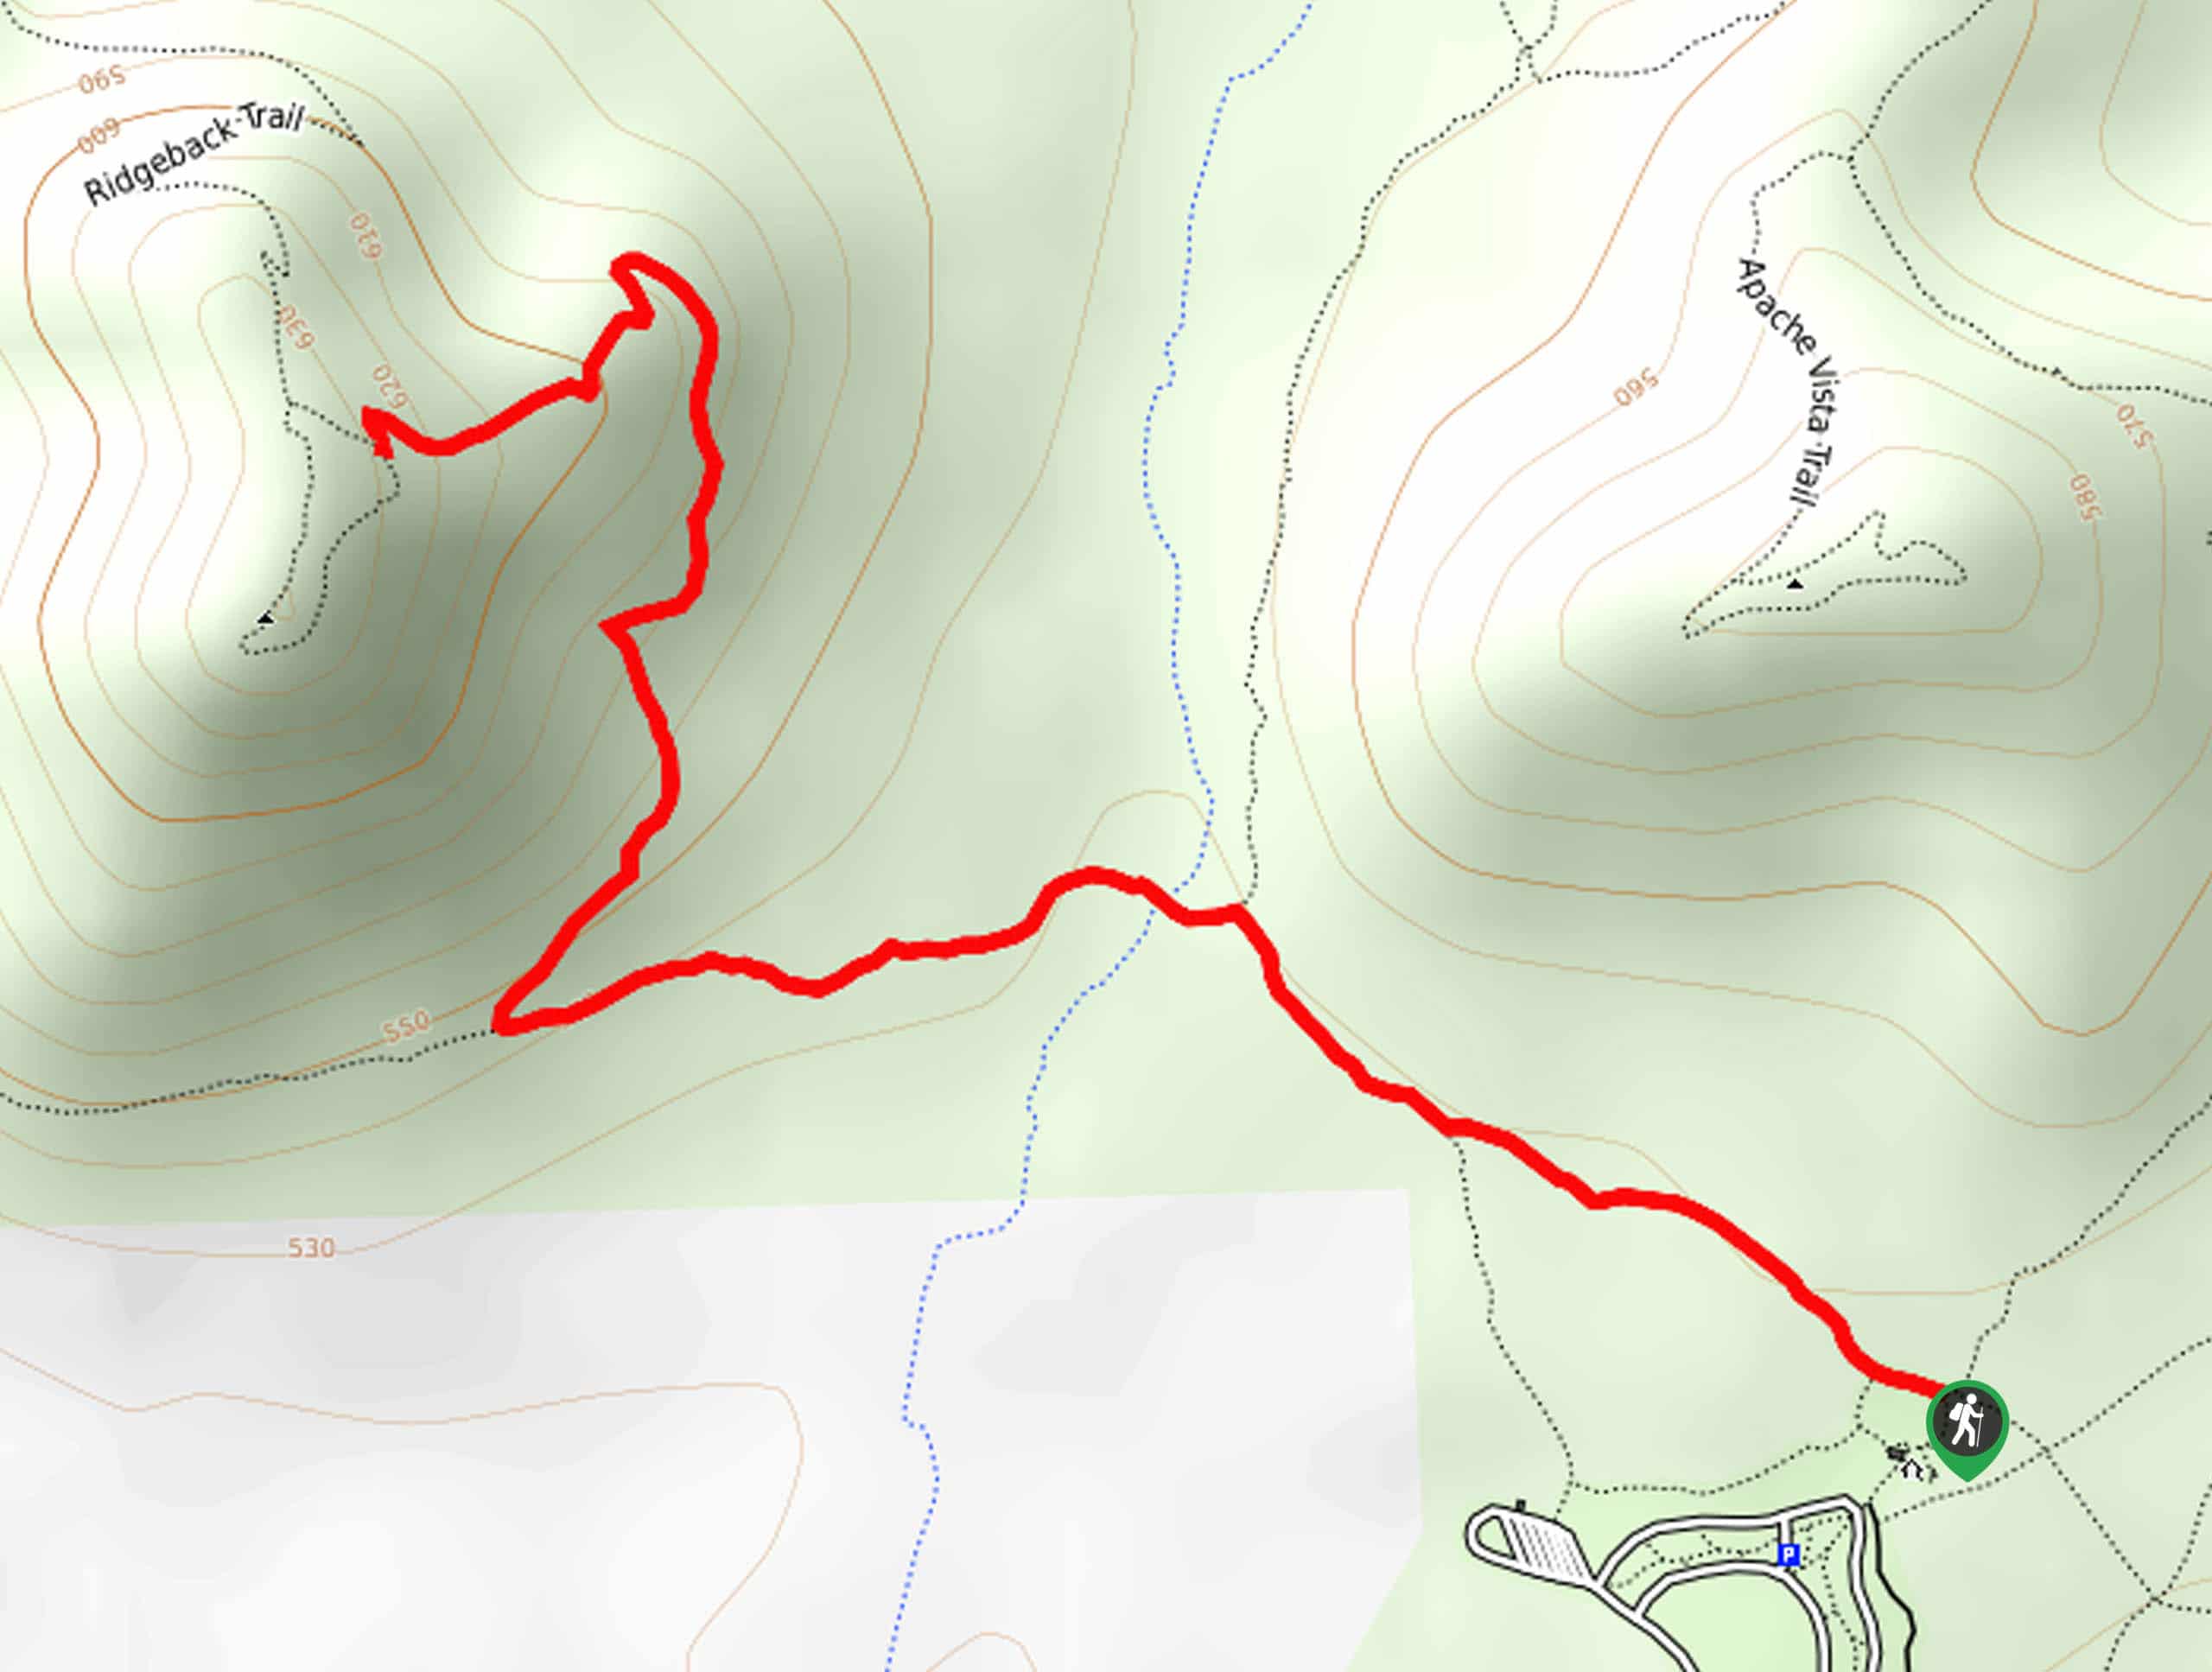 Ridgeback Overlook Hike Map